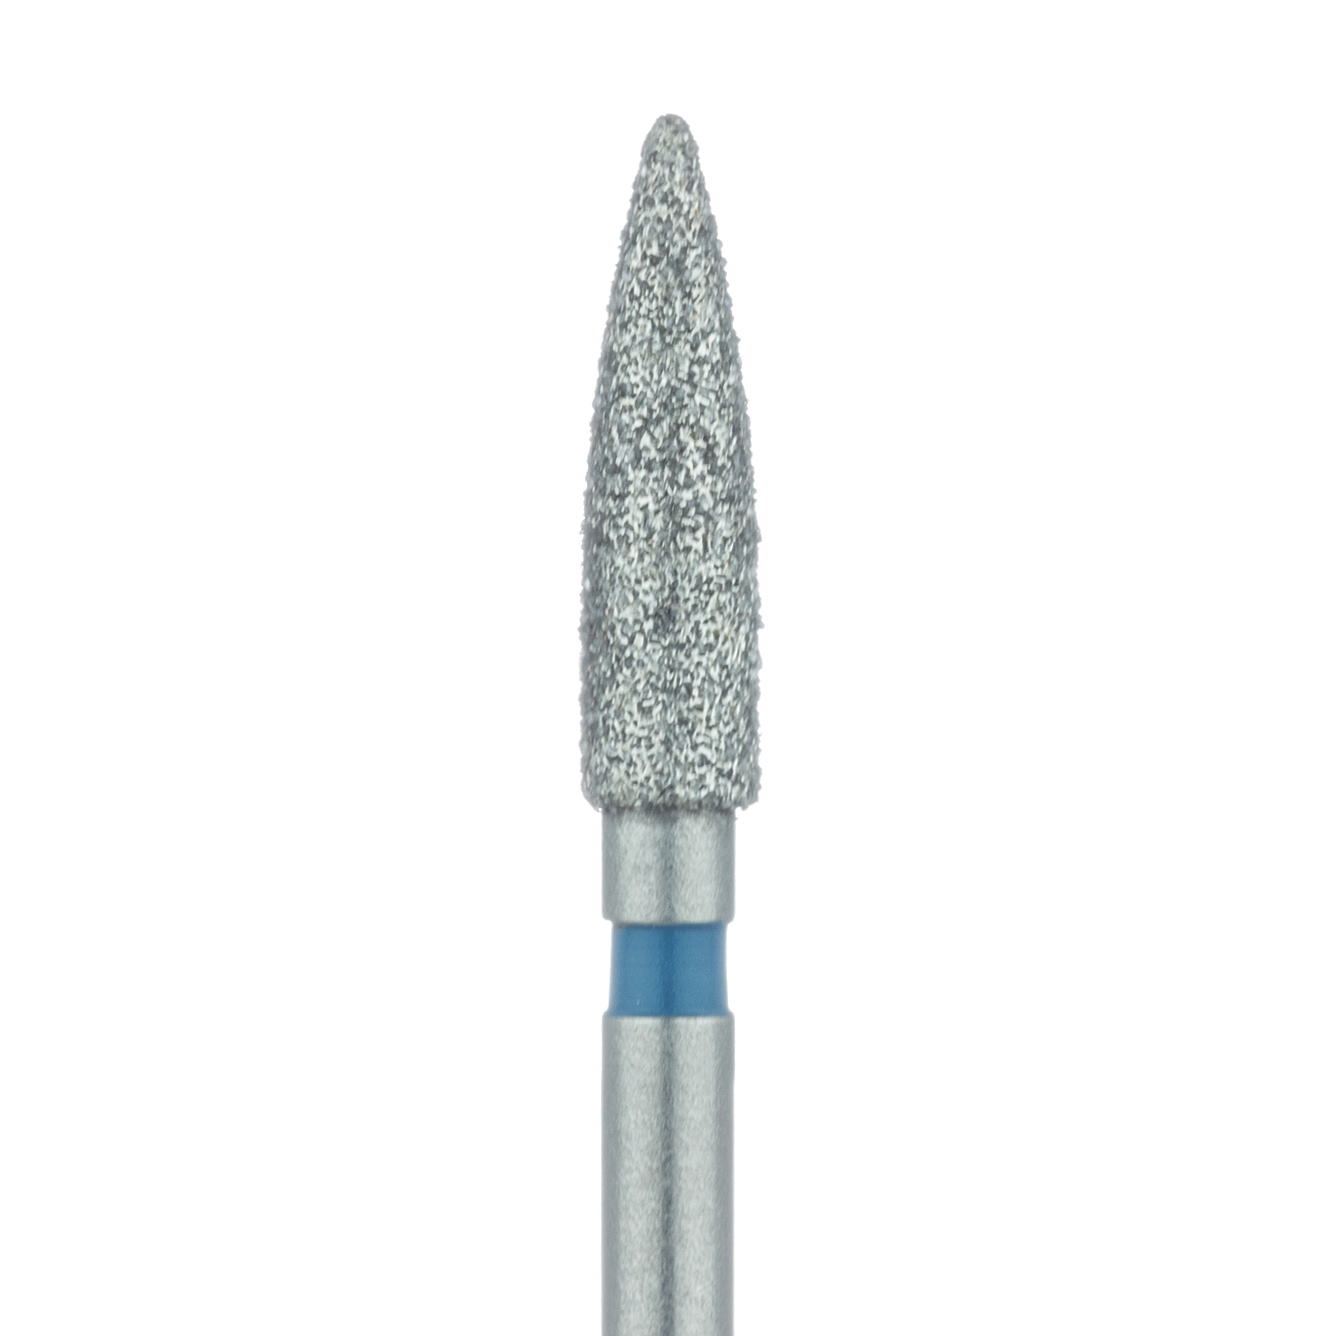 862-021-FG Flame Diamond Bur 2.1mm Medium FG